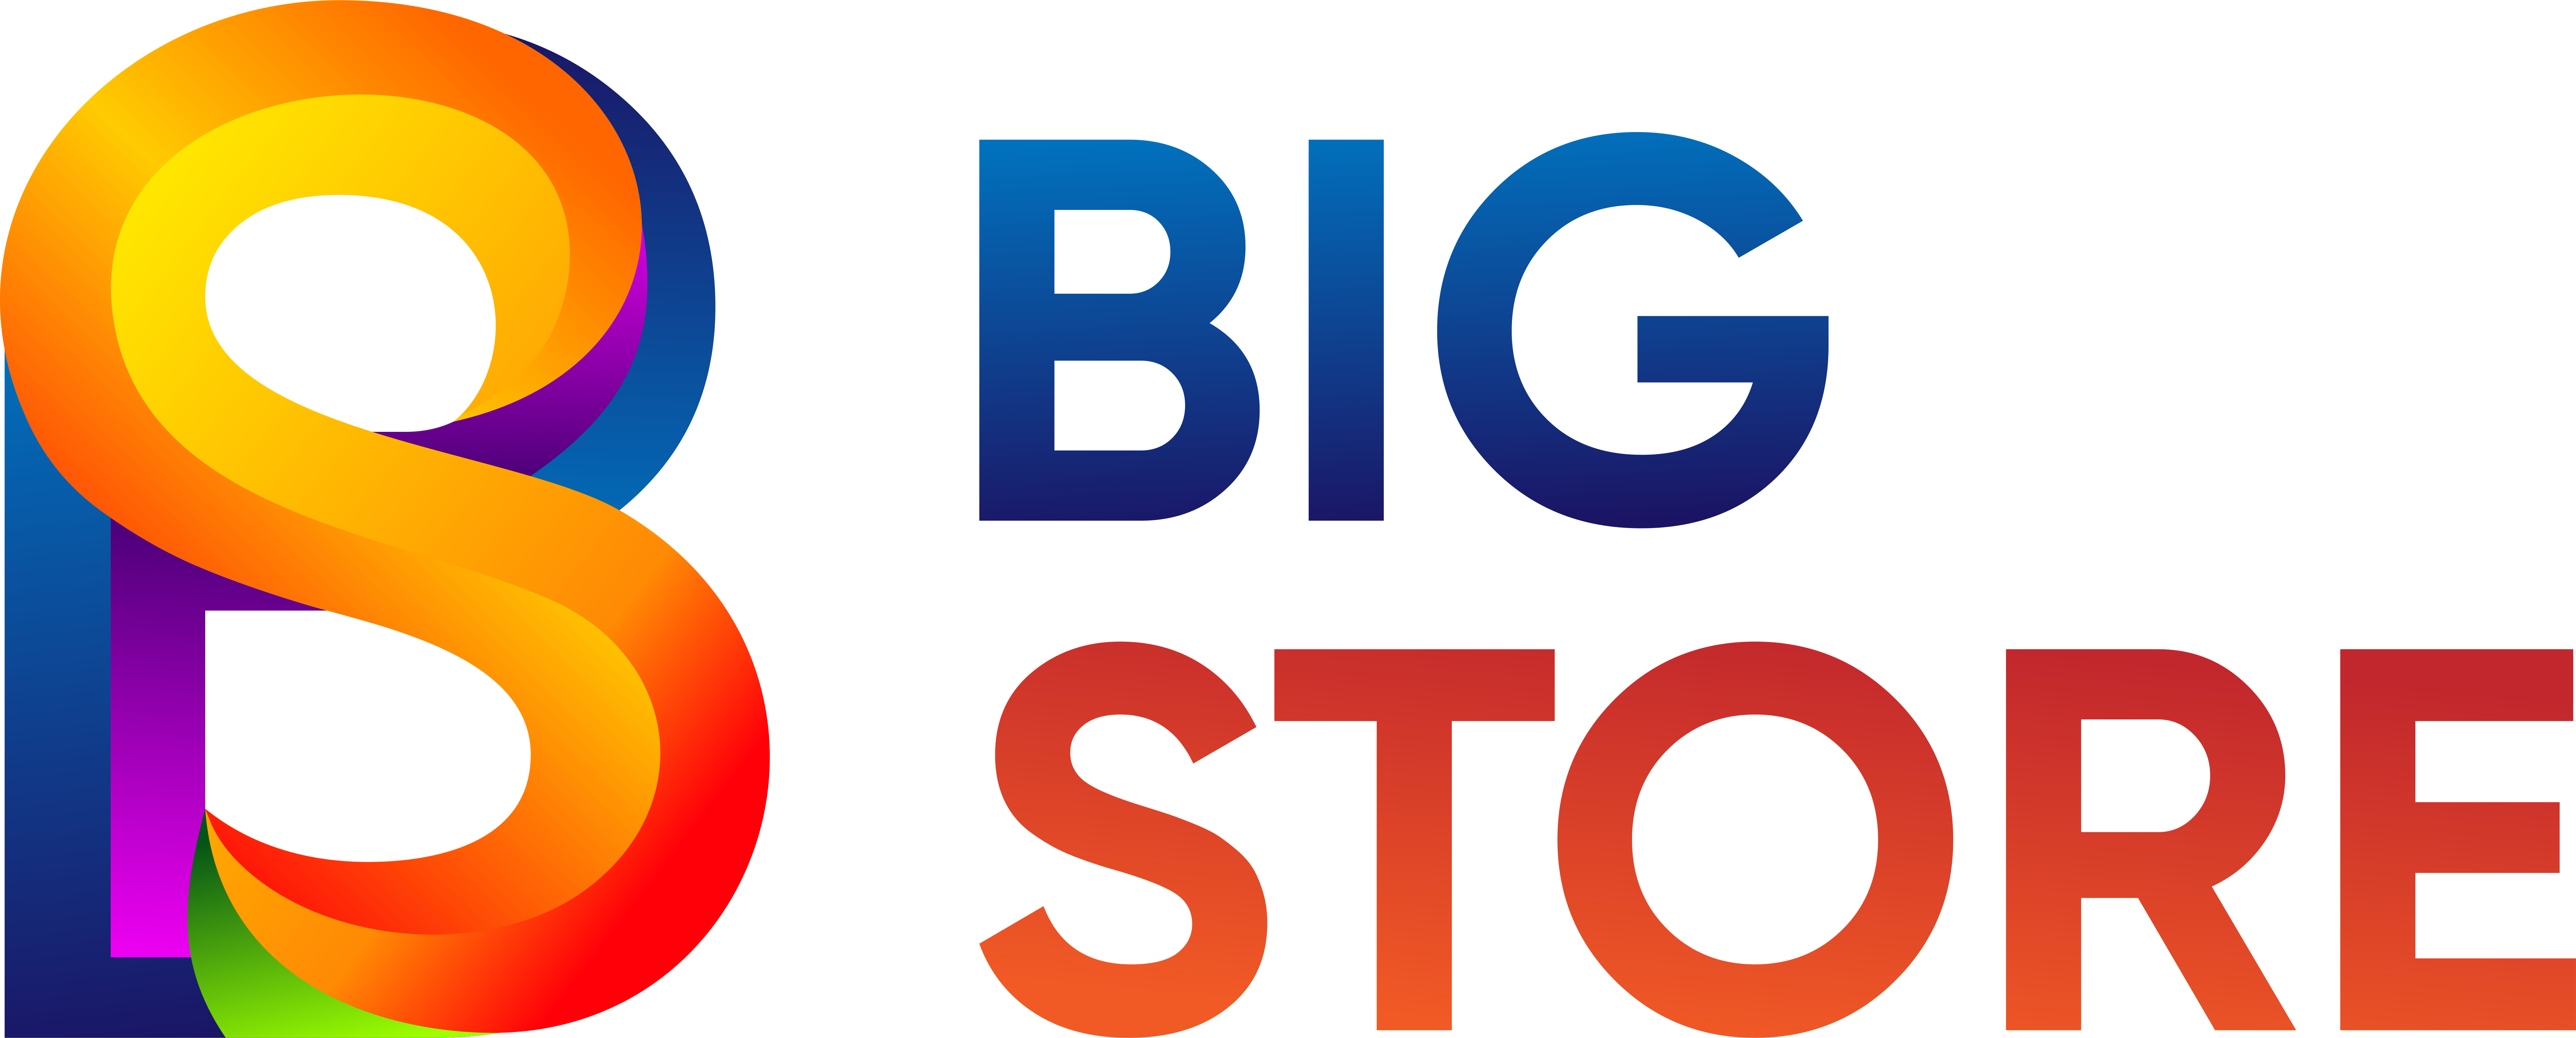 Интернет-магазин BigStore.by - БигСтор